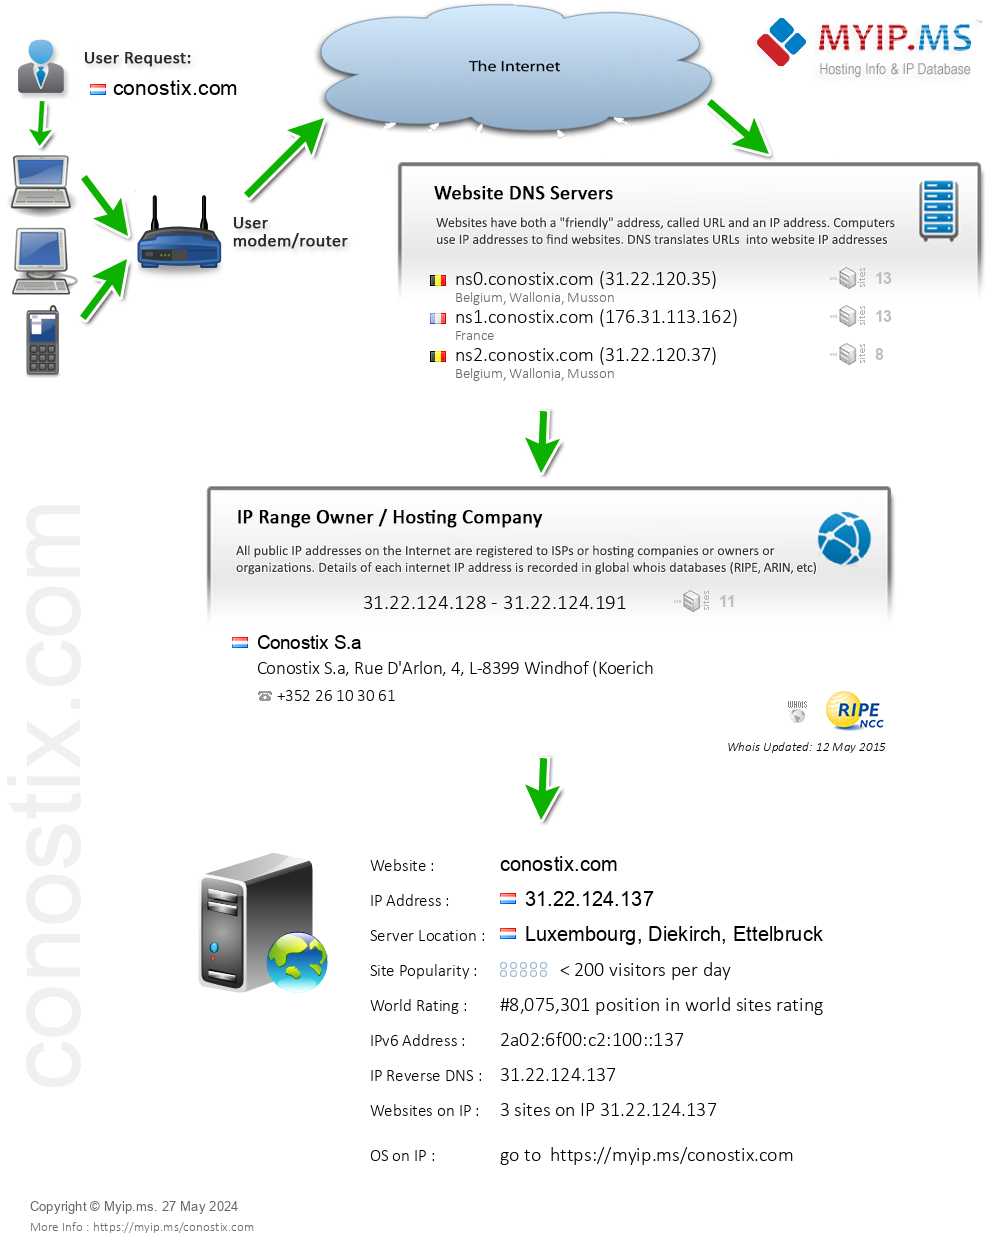 Conostix.com - Website Hosting Visual IP Diagram